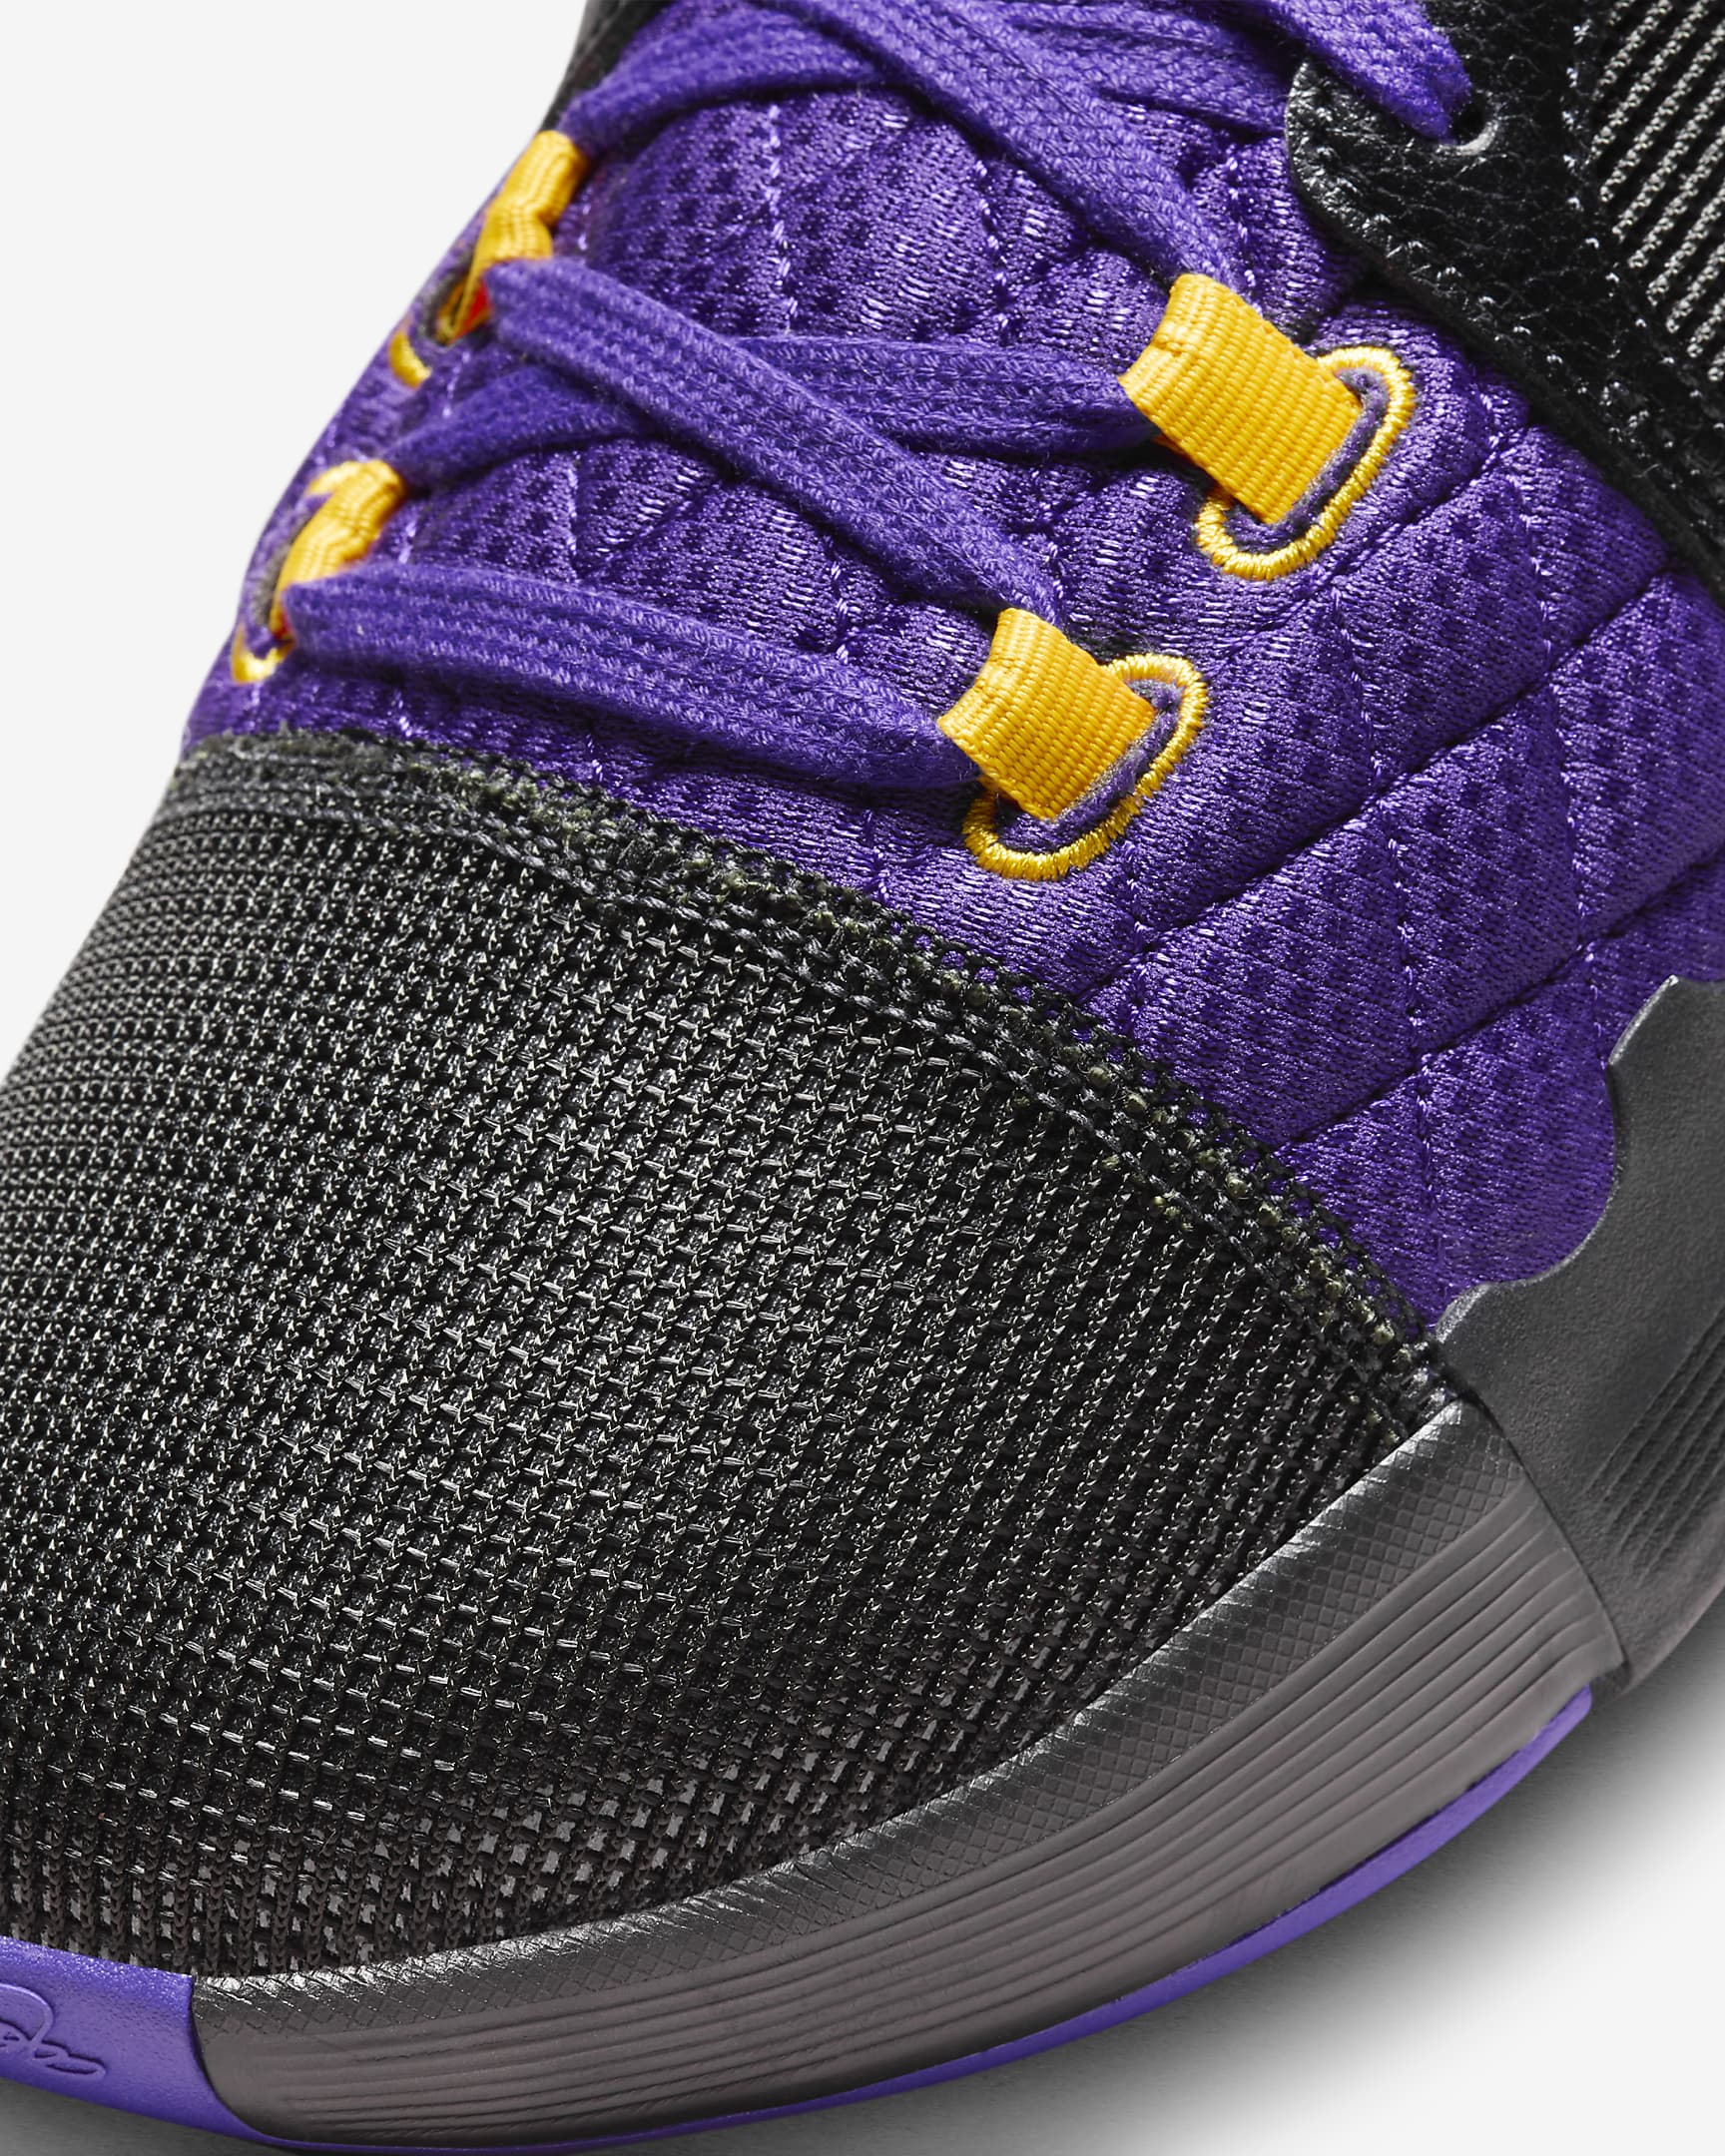 LeBron Witness 8 Basketball Shoes. Nike UK